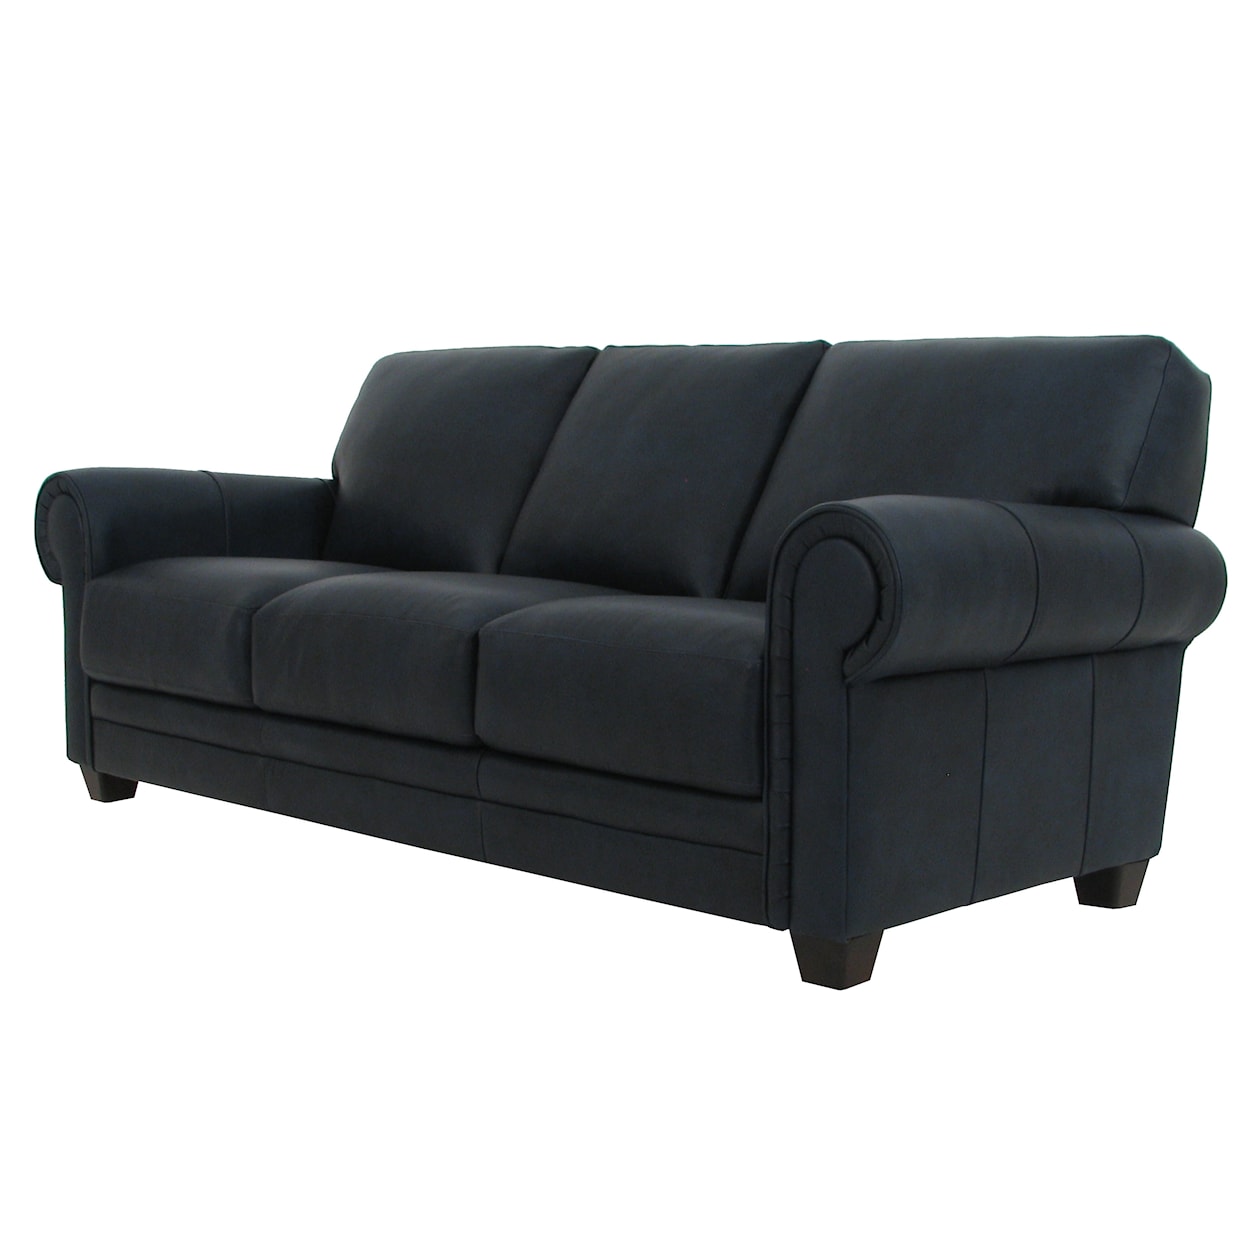 Virginia Furniture Market Premium Leather 7751 Sofa